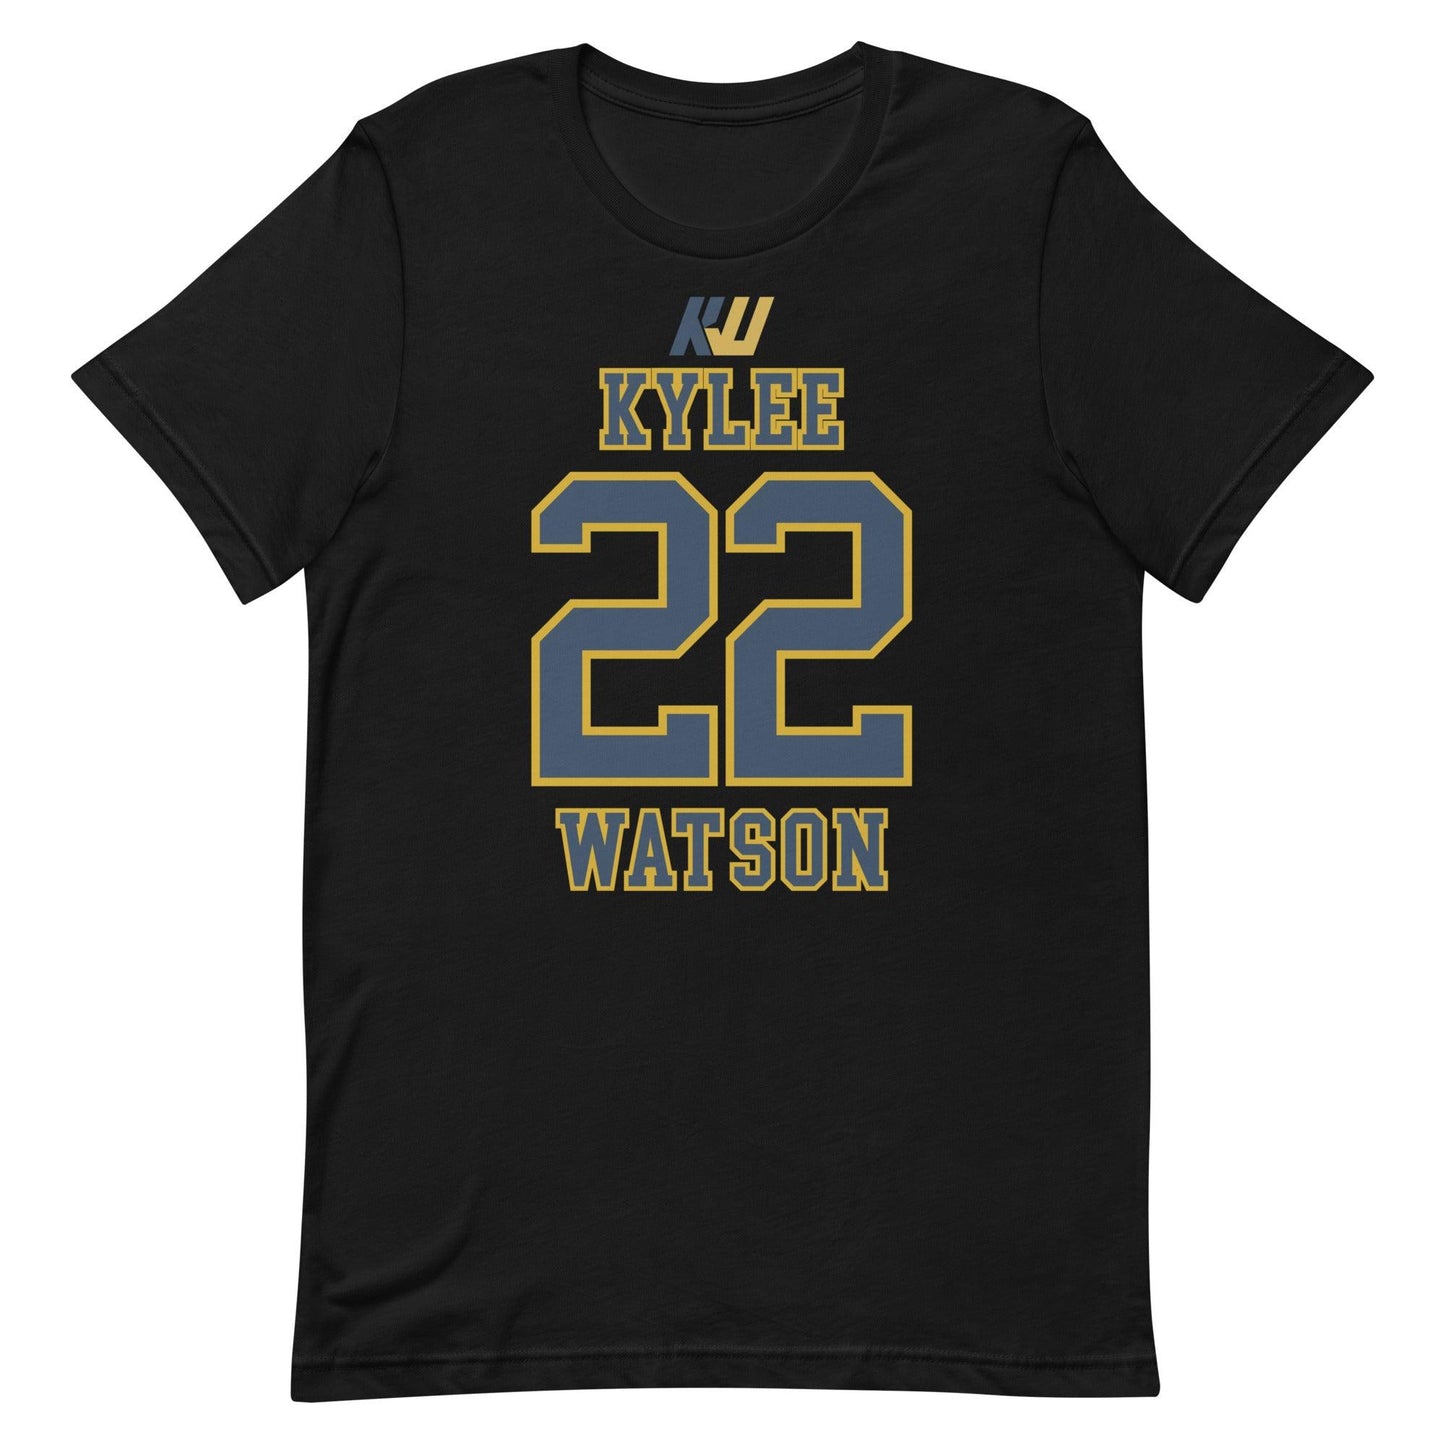 Kylee Watson "Jersey" t-shirt - Fan Arch